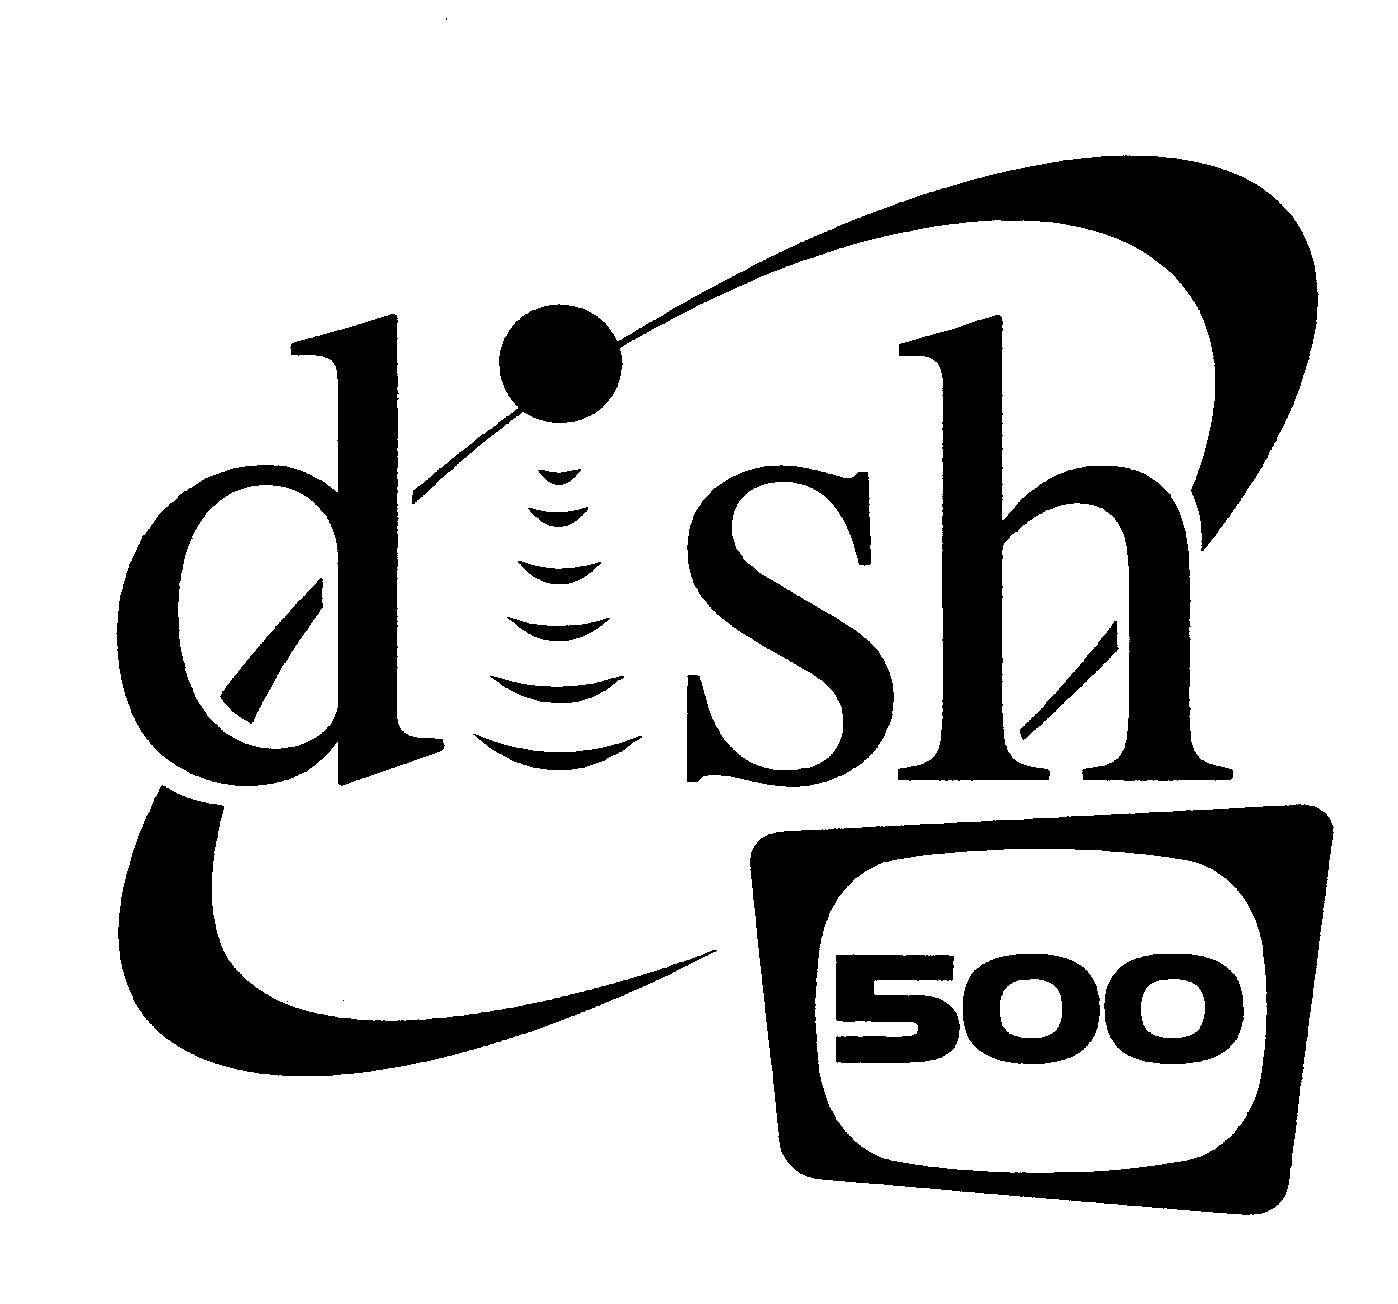  DISH 500